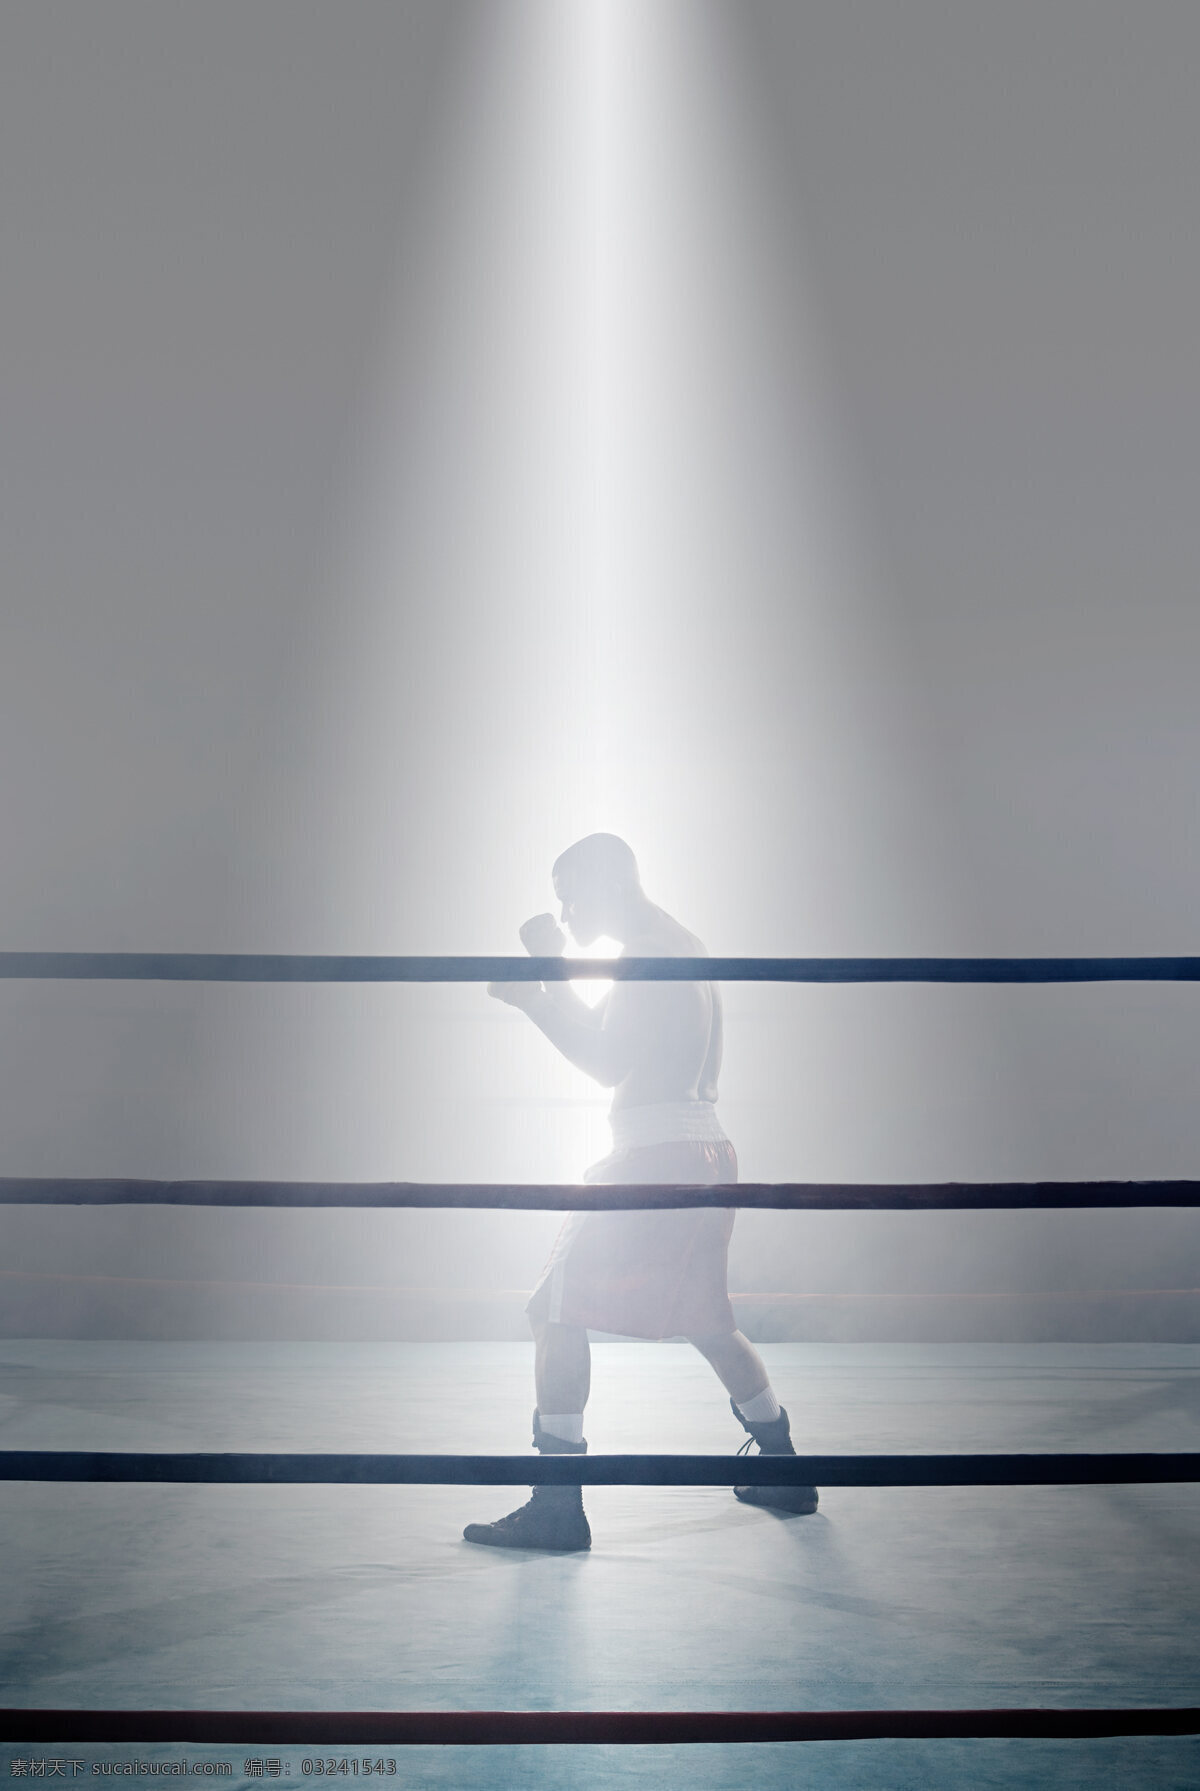 擂台 上 训练 男性 拳击 运动员 体育运动 体育项目 比赛 拳击运动员 欧美 外国男人 强壮 力量 肌肉男 高清图片 商务人士 人物图片